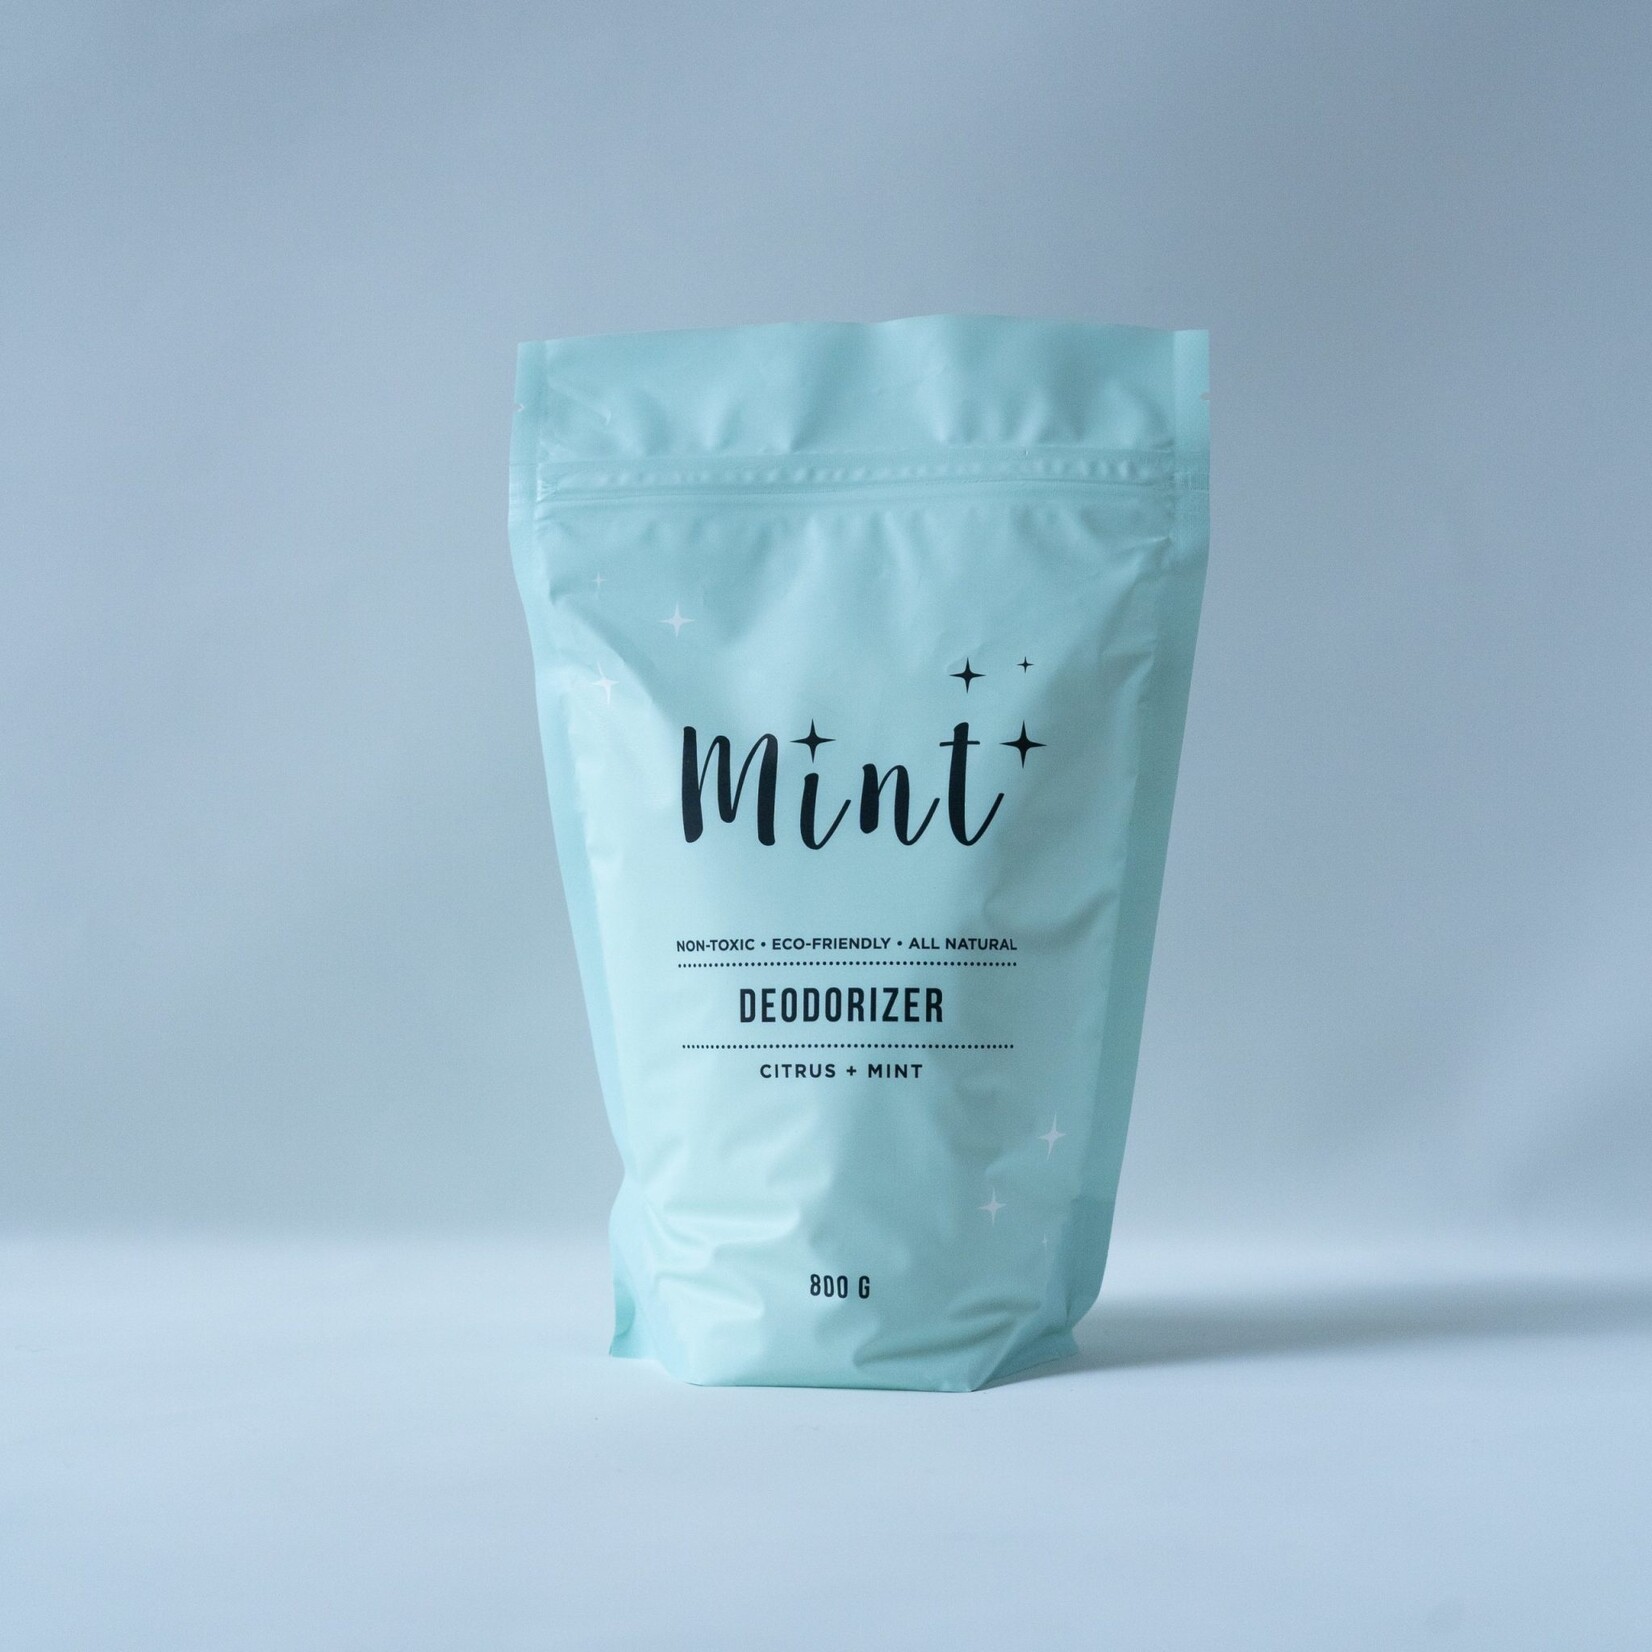 Deodorizer by Mint